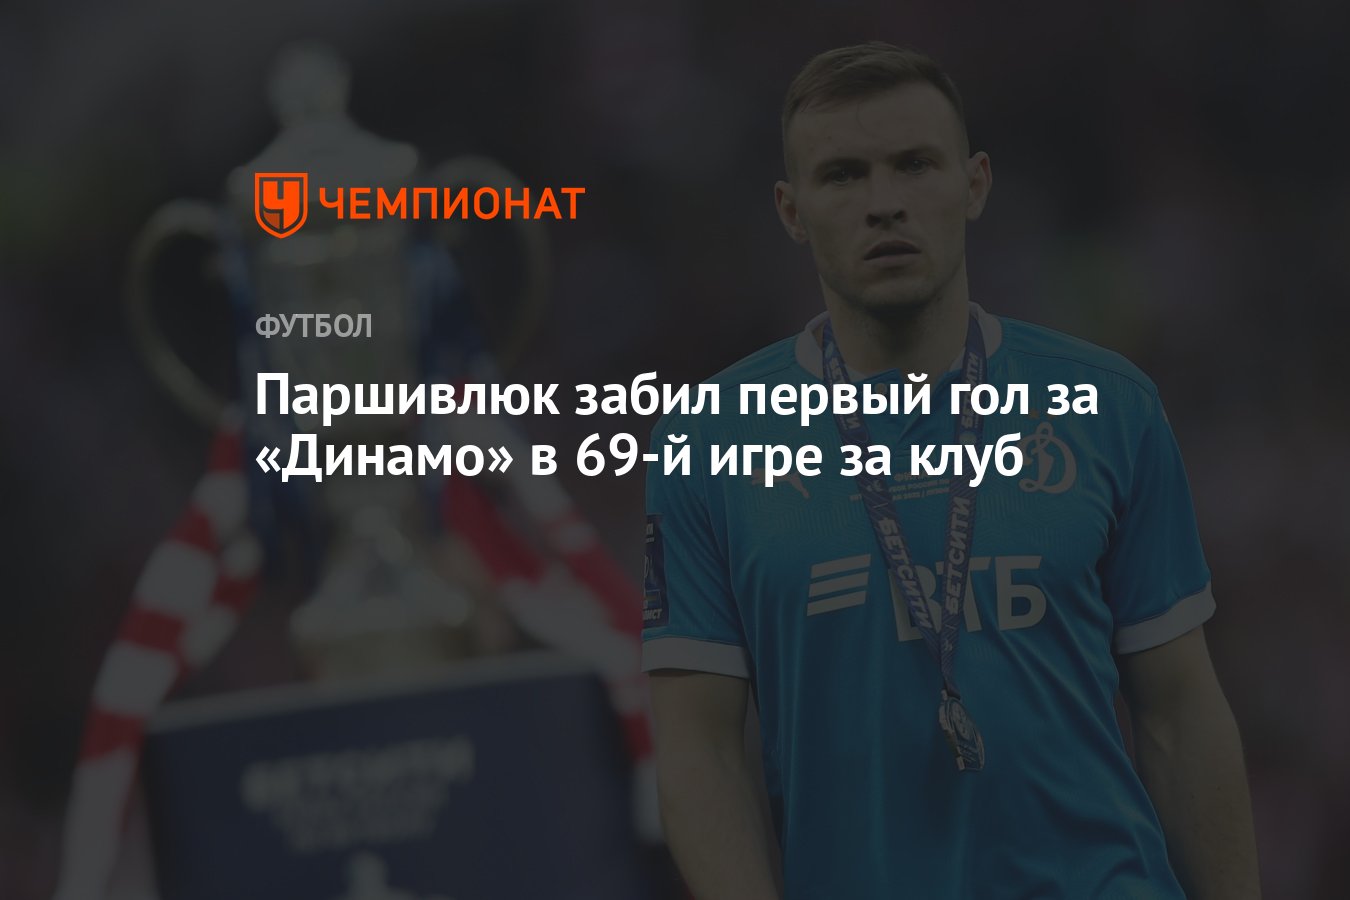 Паршивлюк забил первый гол за «Динамо» в 69-й игре за клуб - Чемпионат